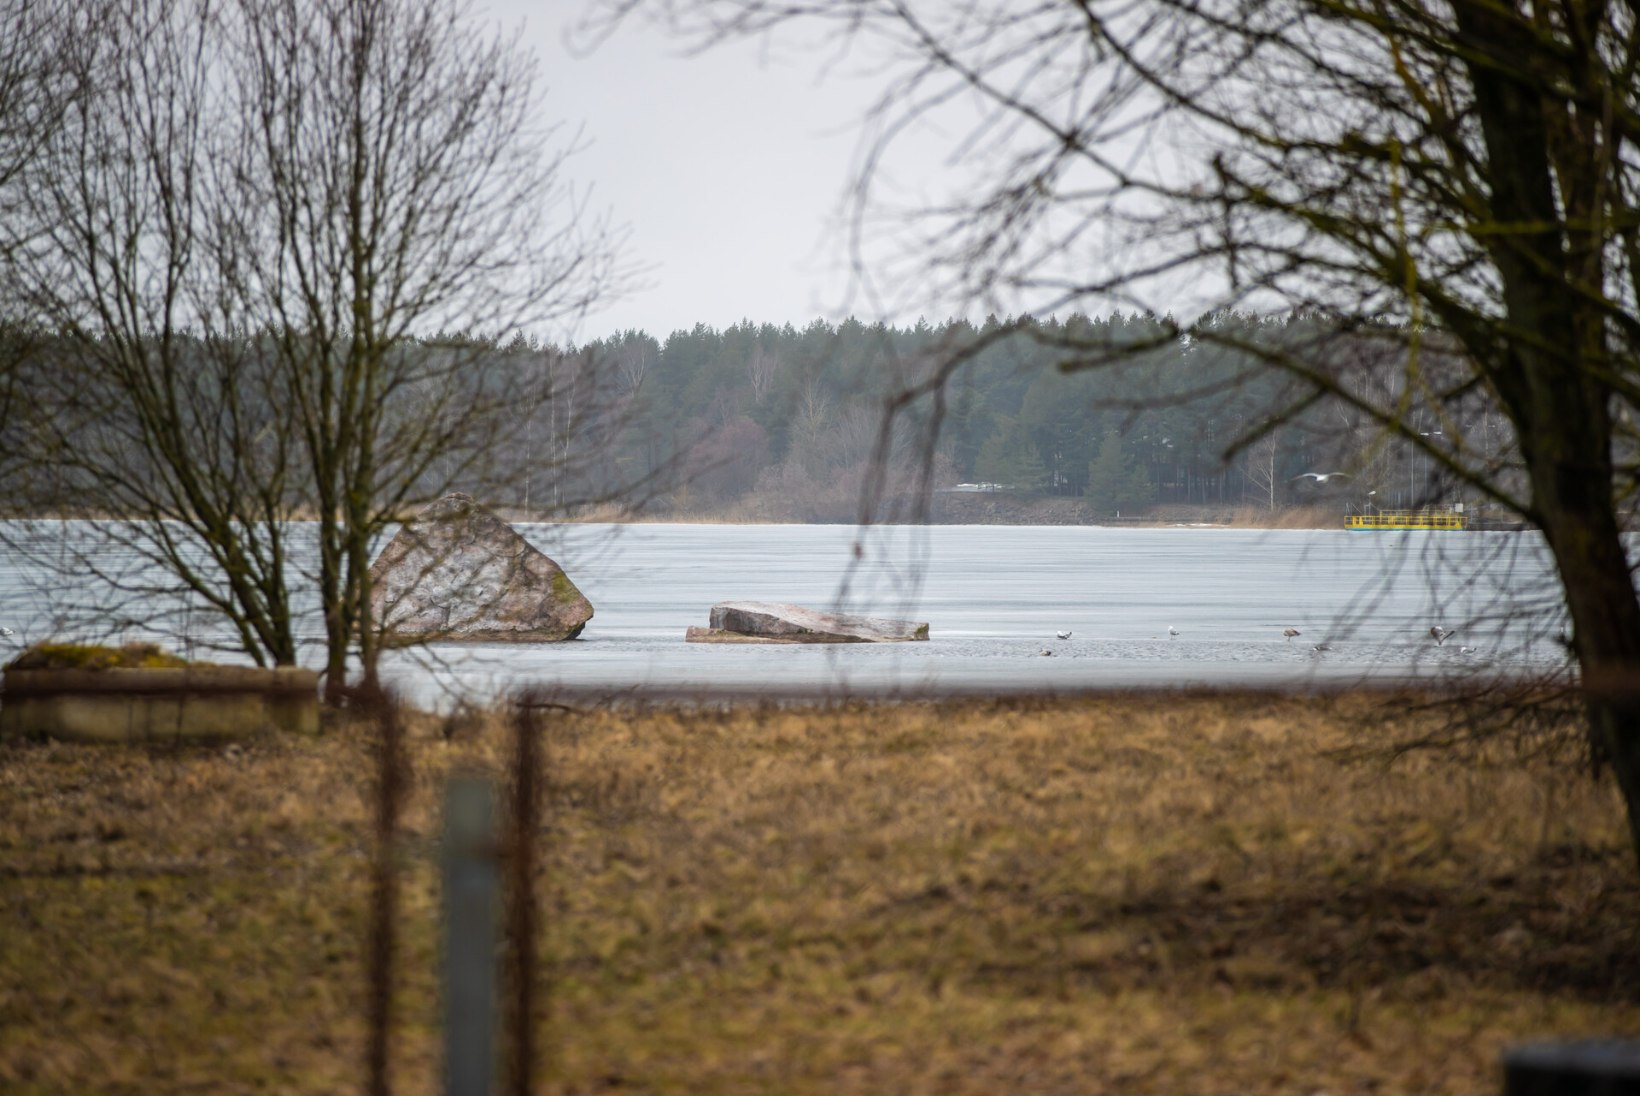 Kas saastav põleng mõjutas veekvaliteeti? Tallinna Vesi: Ülemiste järve vesi on puhas